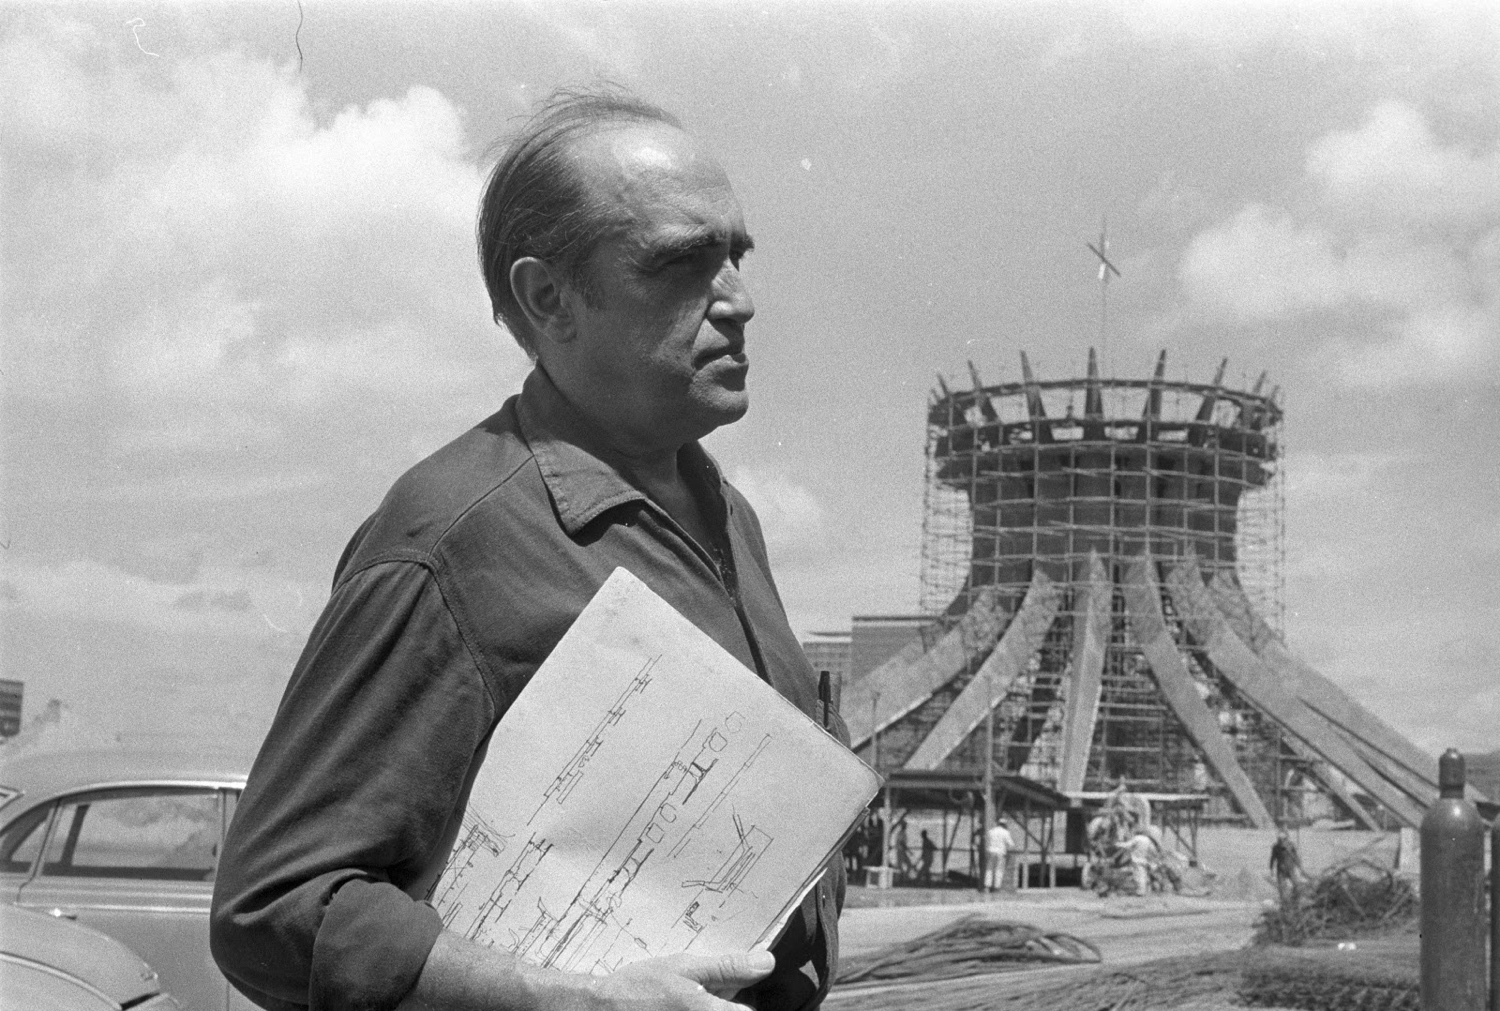 Niemeyer at the Catedral de Brasília